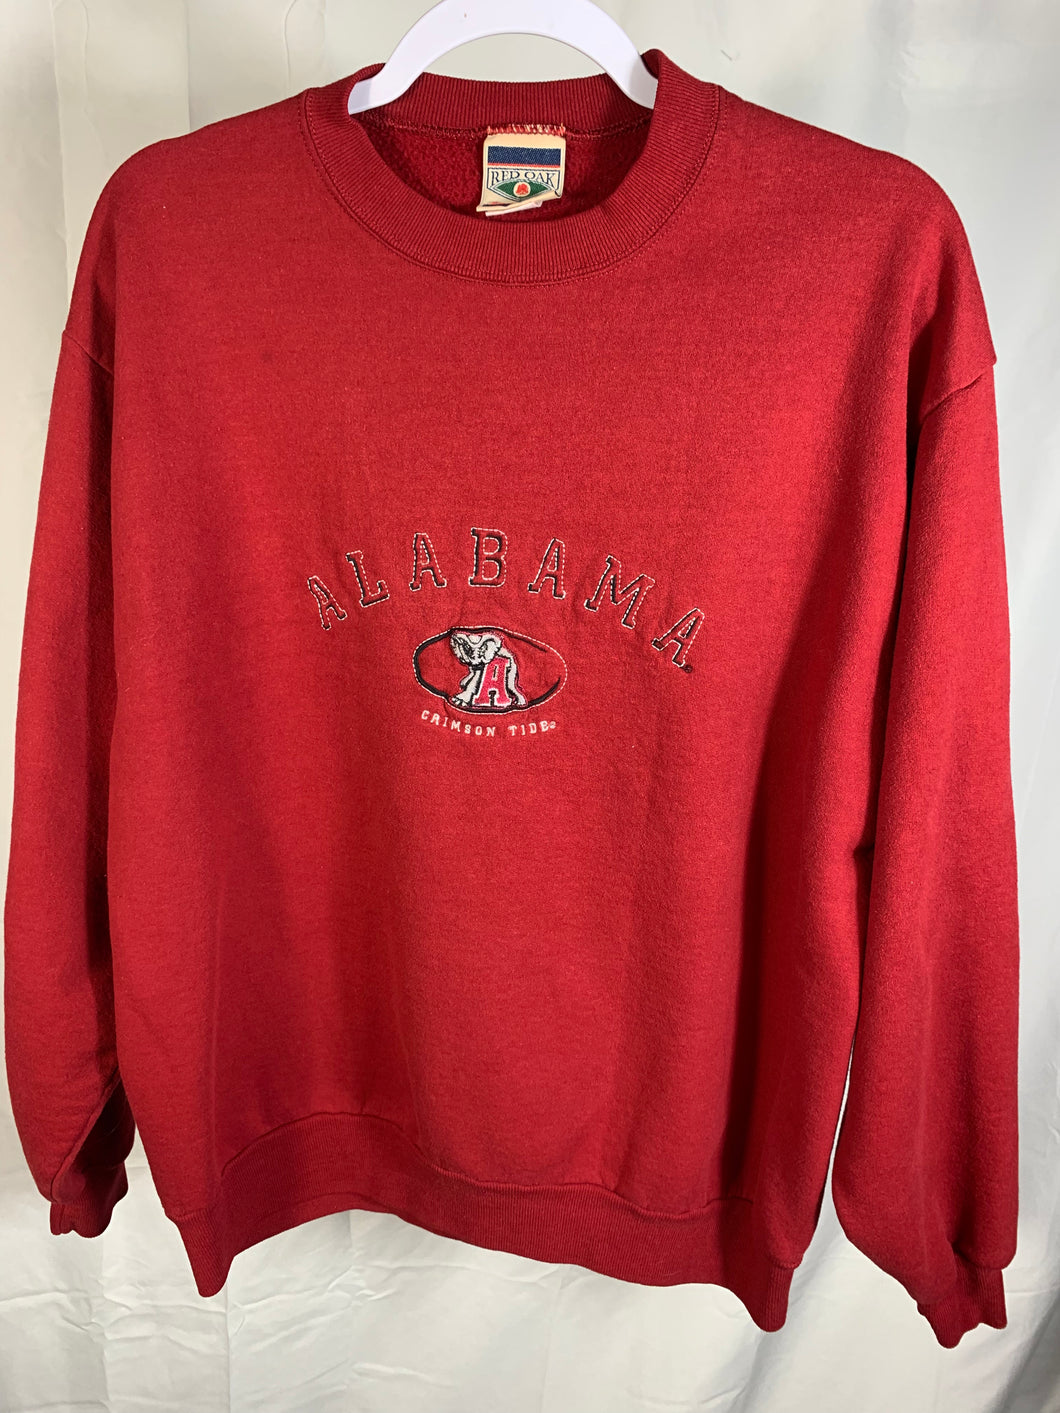 Vintage Alabama Embroidered Sweatshirt Large